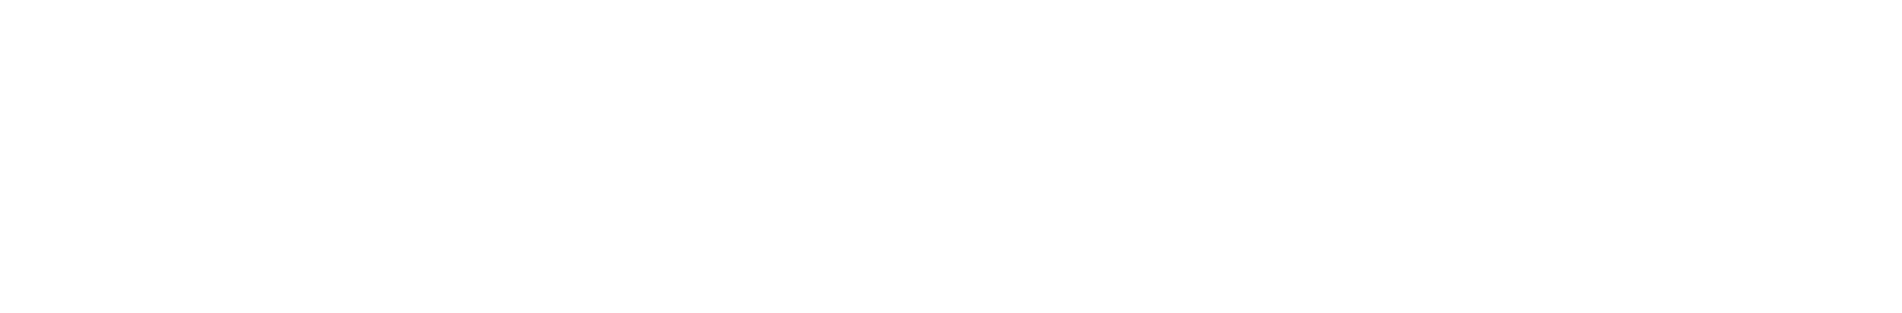 Medtronic Logo groß für dunkle Hintergründe (transparentes PNG)